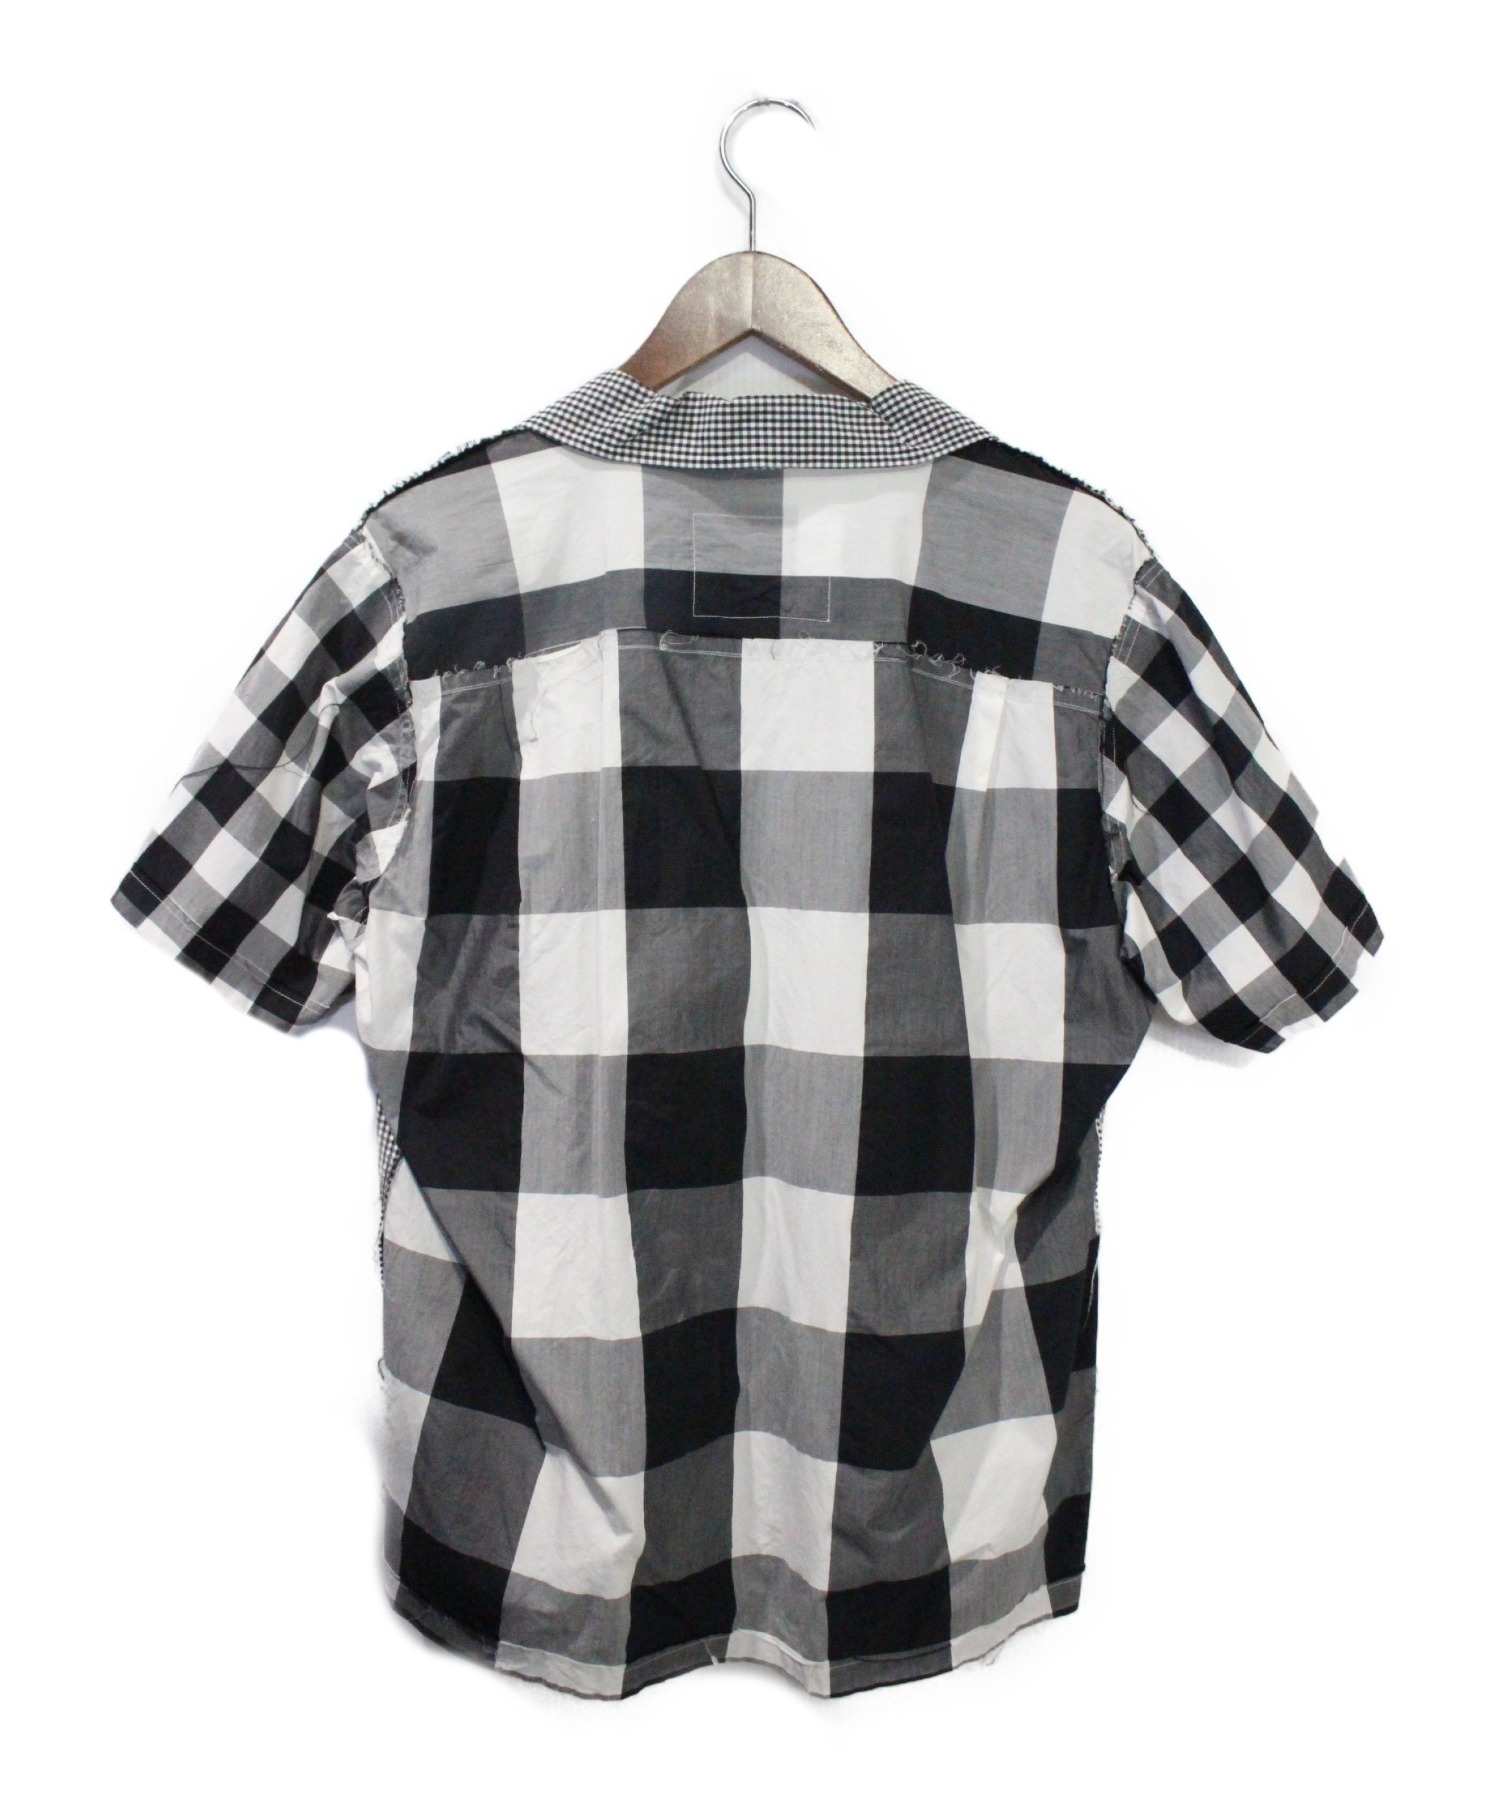 Mastermind JAPAN (マスターマインド ジャパン) 再構築チェック半袖シャツ ホワイト×ブラック サイズ:M